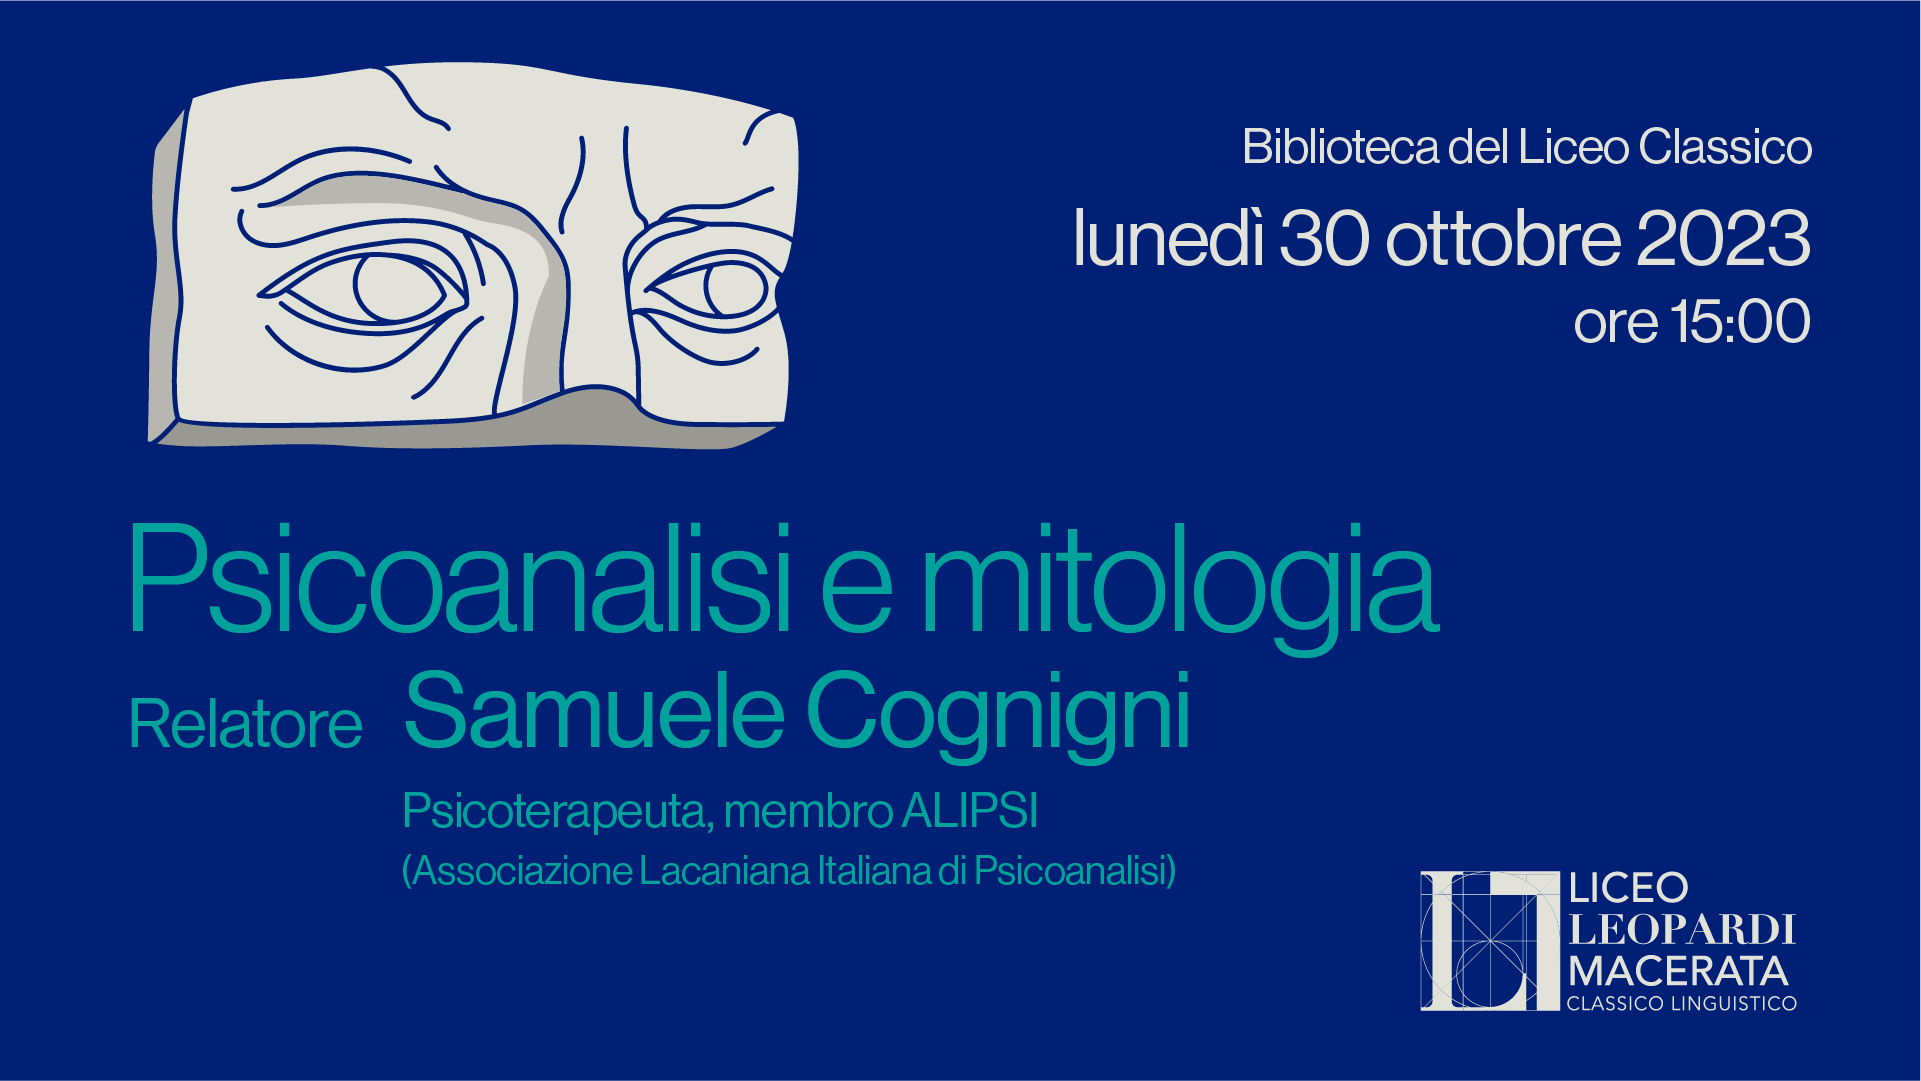 Psicoanalisi e mitologia, 30 ottobre - Liceo Statale G. Leopardi Macerata